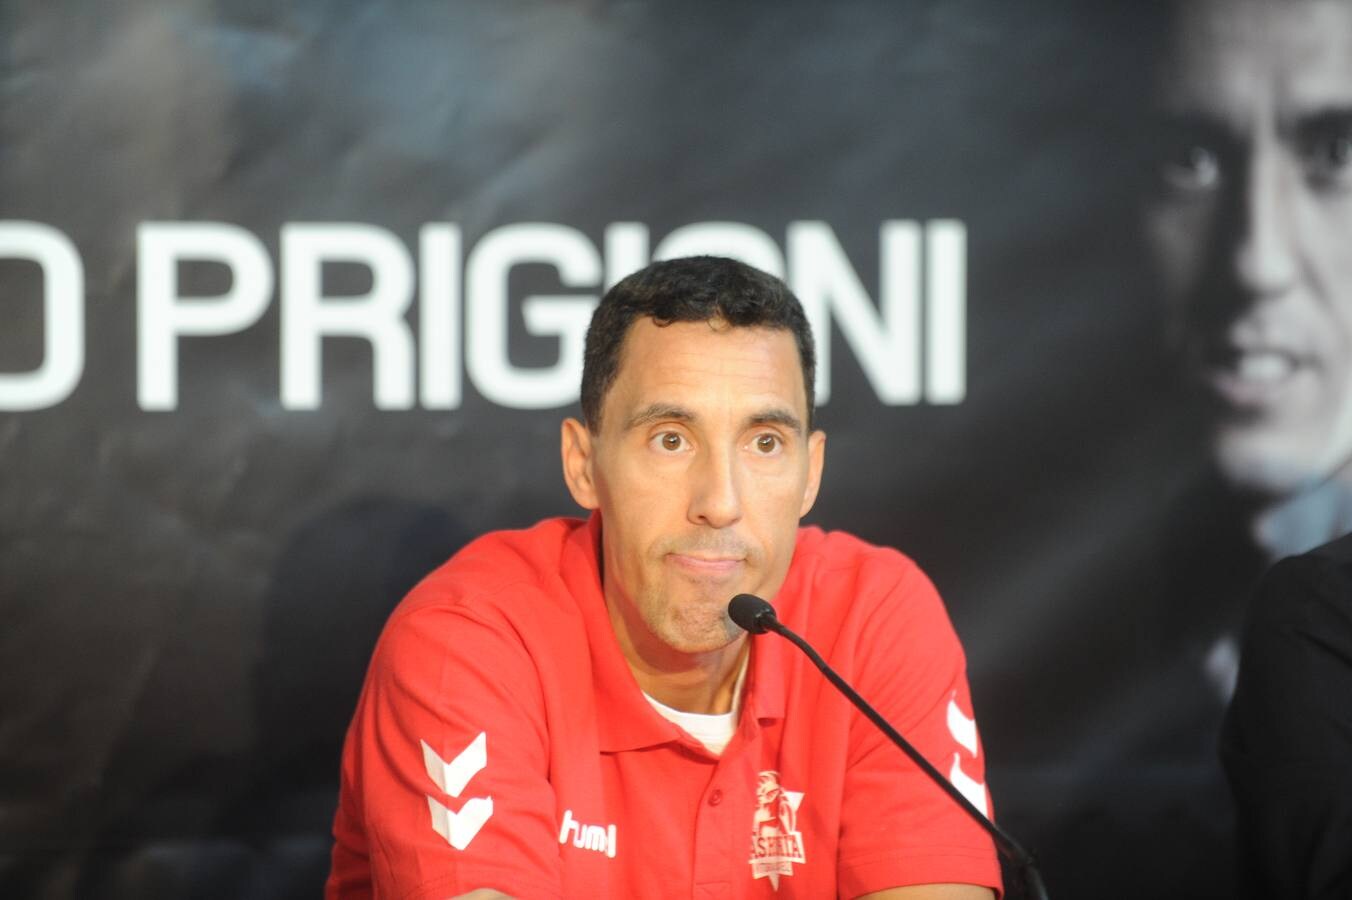 Prigioni, presentado como nuevo jugador baskonista